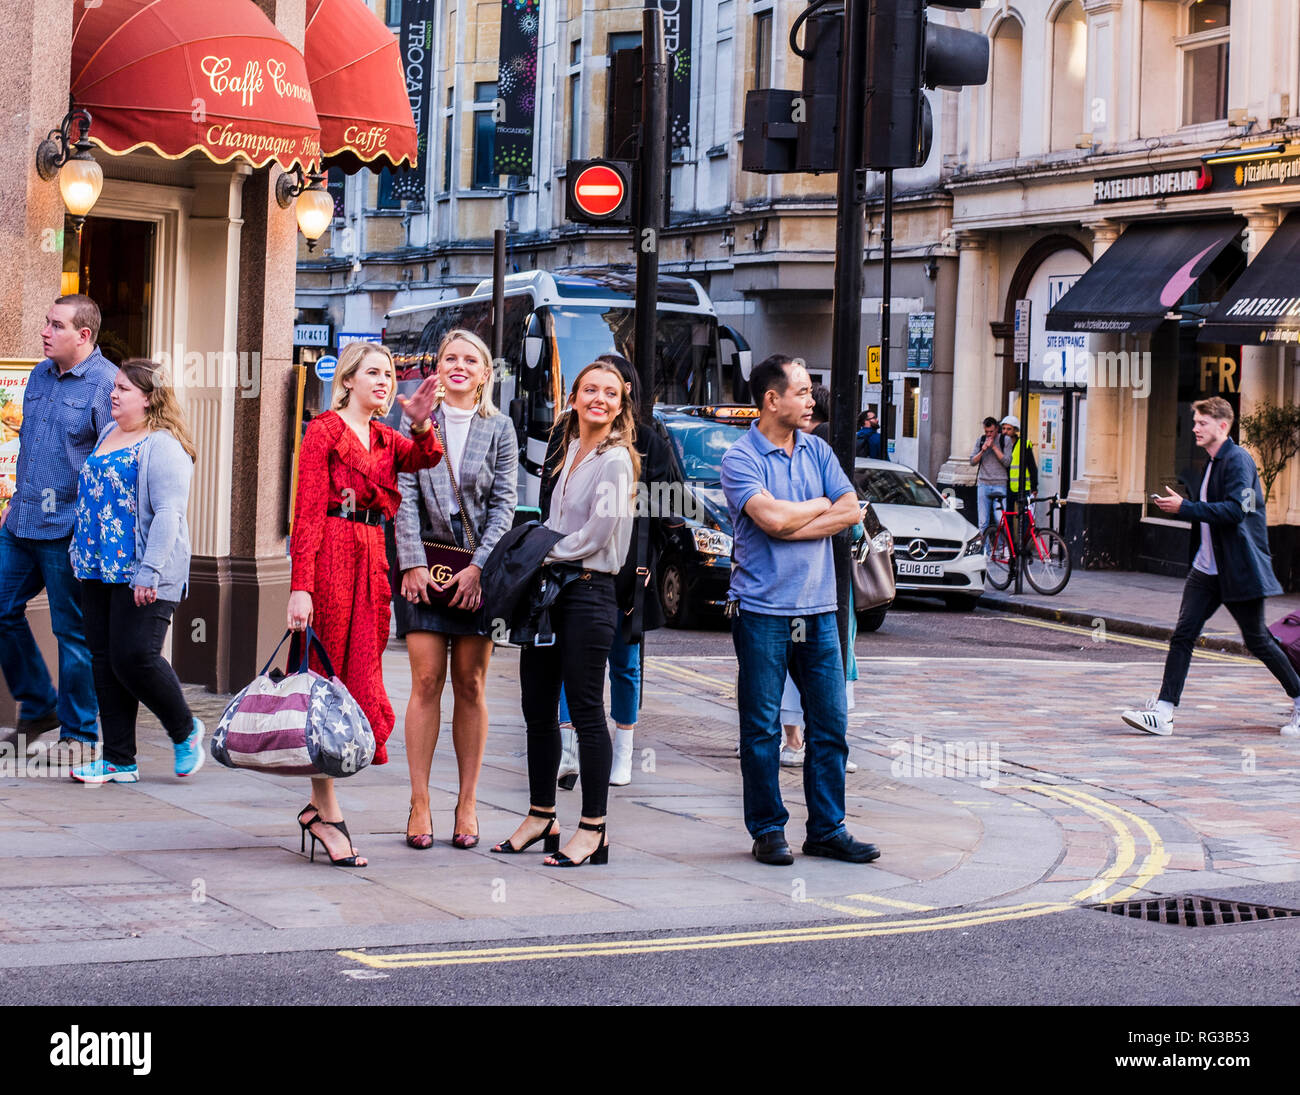 Weibliche Freunde, stehend auf Gehsteig neben der Straße, zu entscheiden, welcher Weg zu gehen ist, Central London, England, Großbritannien Stockfoto